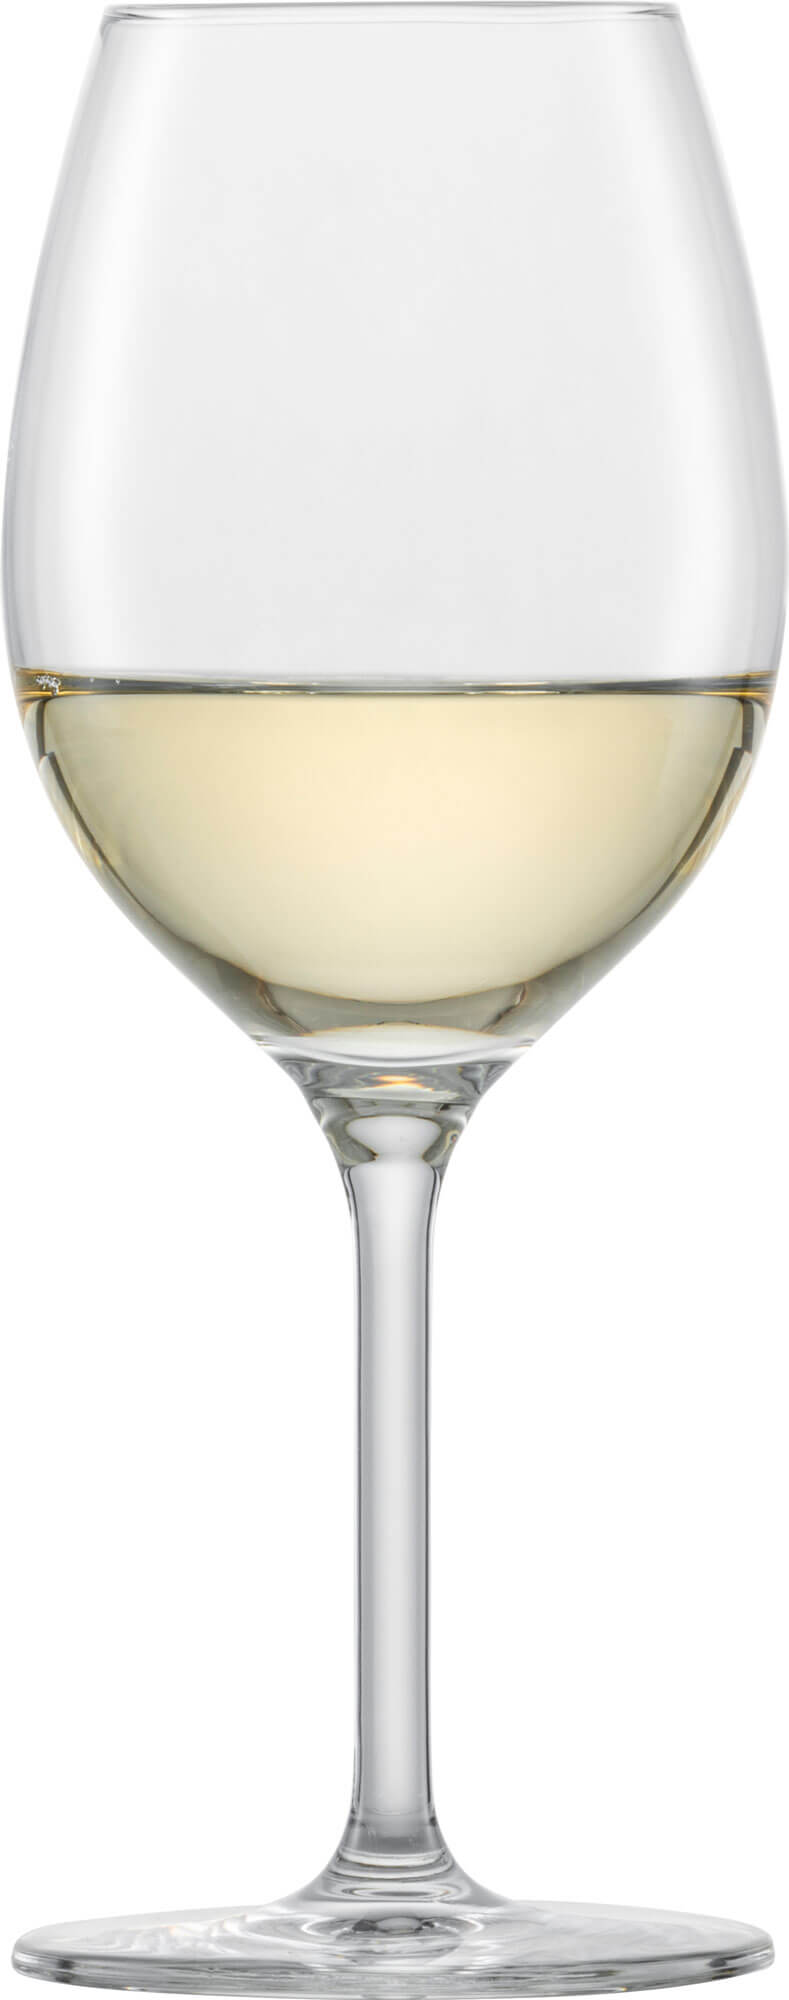 Chardonnay Glas Banquet, Schott Zwiesel - 368ml (1 Stk.)